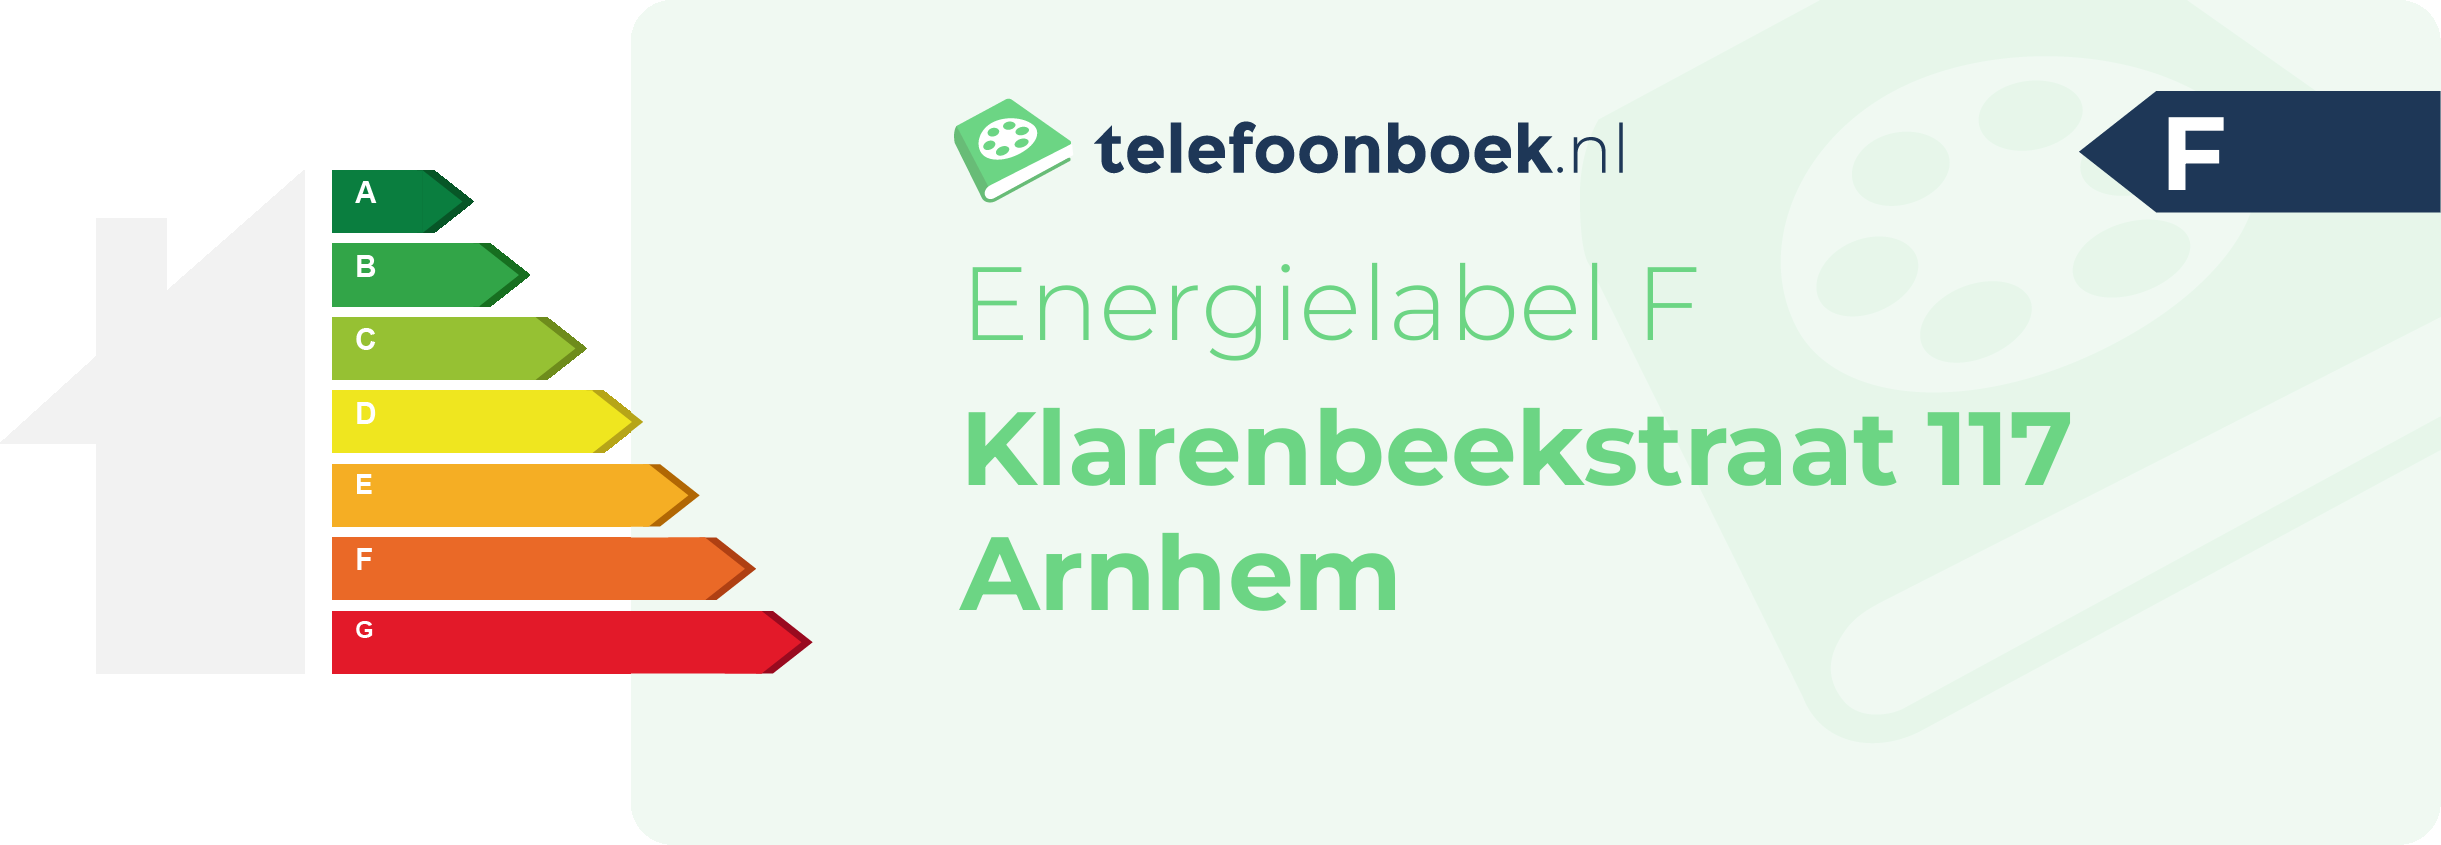 Energielabel Klarenbeekstraat 117 Arnhem